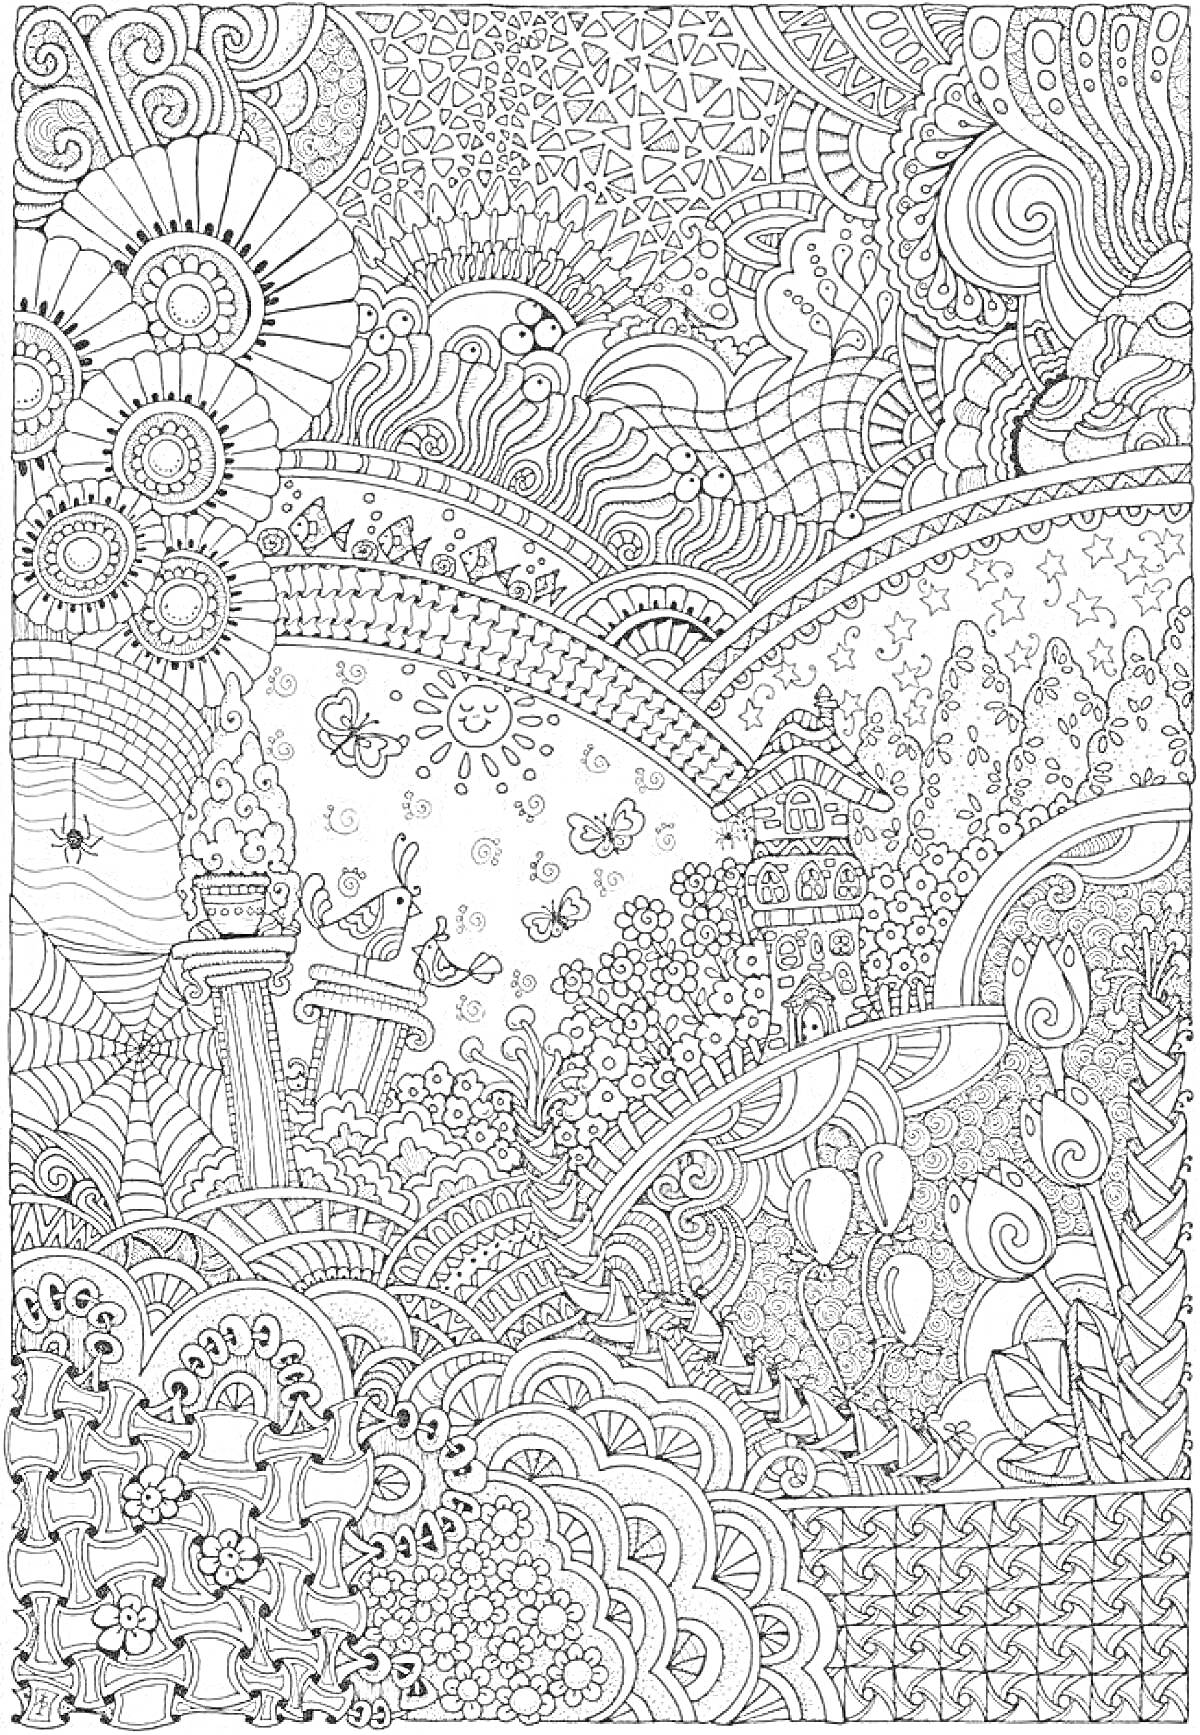 Раскраска Медитативный рисунок с узорами, спиралями, цветами, деревьями, листьями и волнами